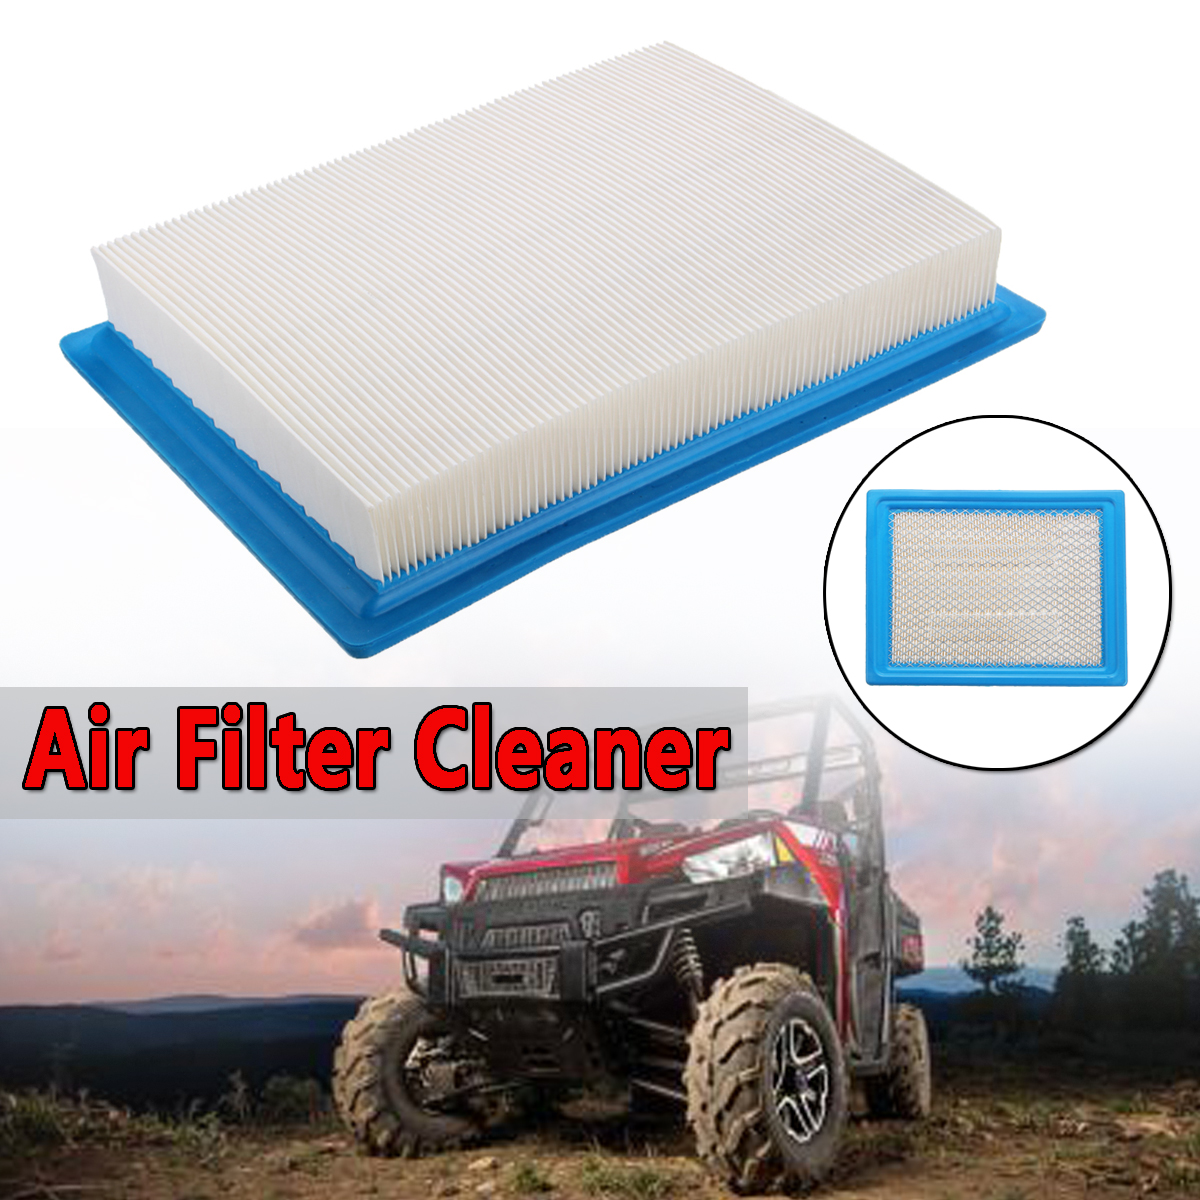 Air Filter Cleaner Polaris